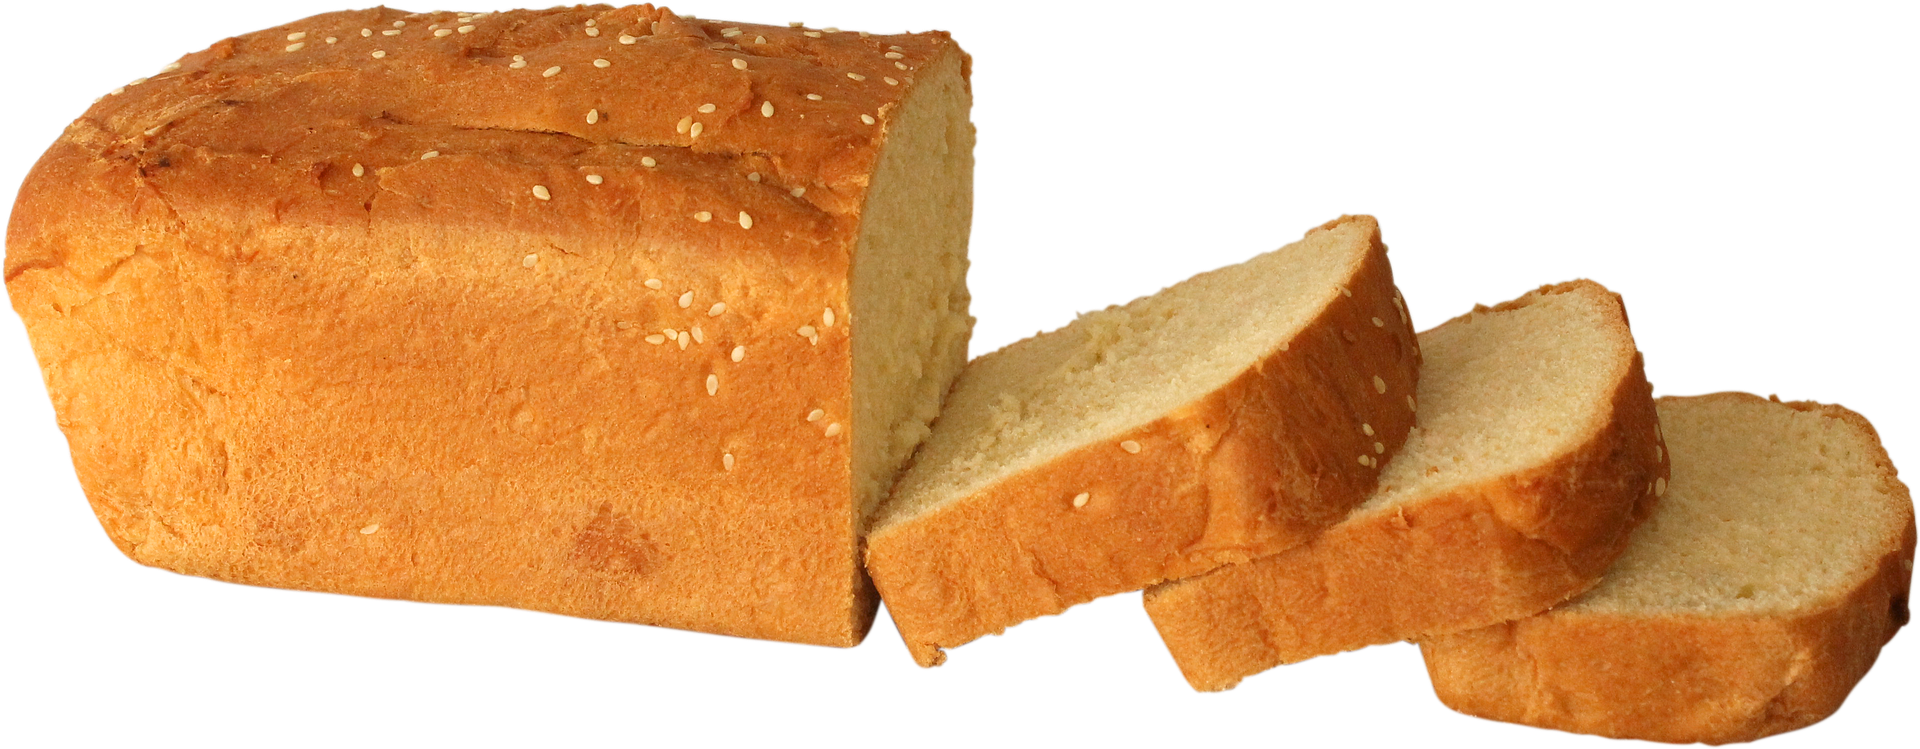  Bread - Not Bullets - Pixabay.com